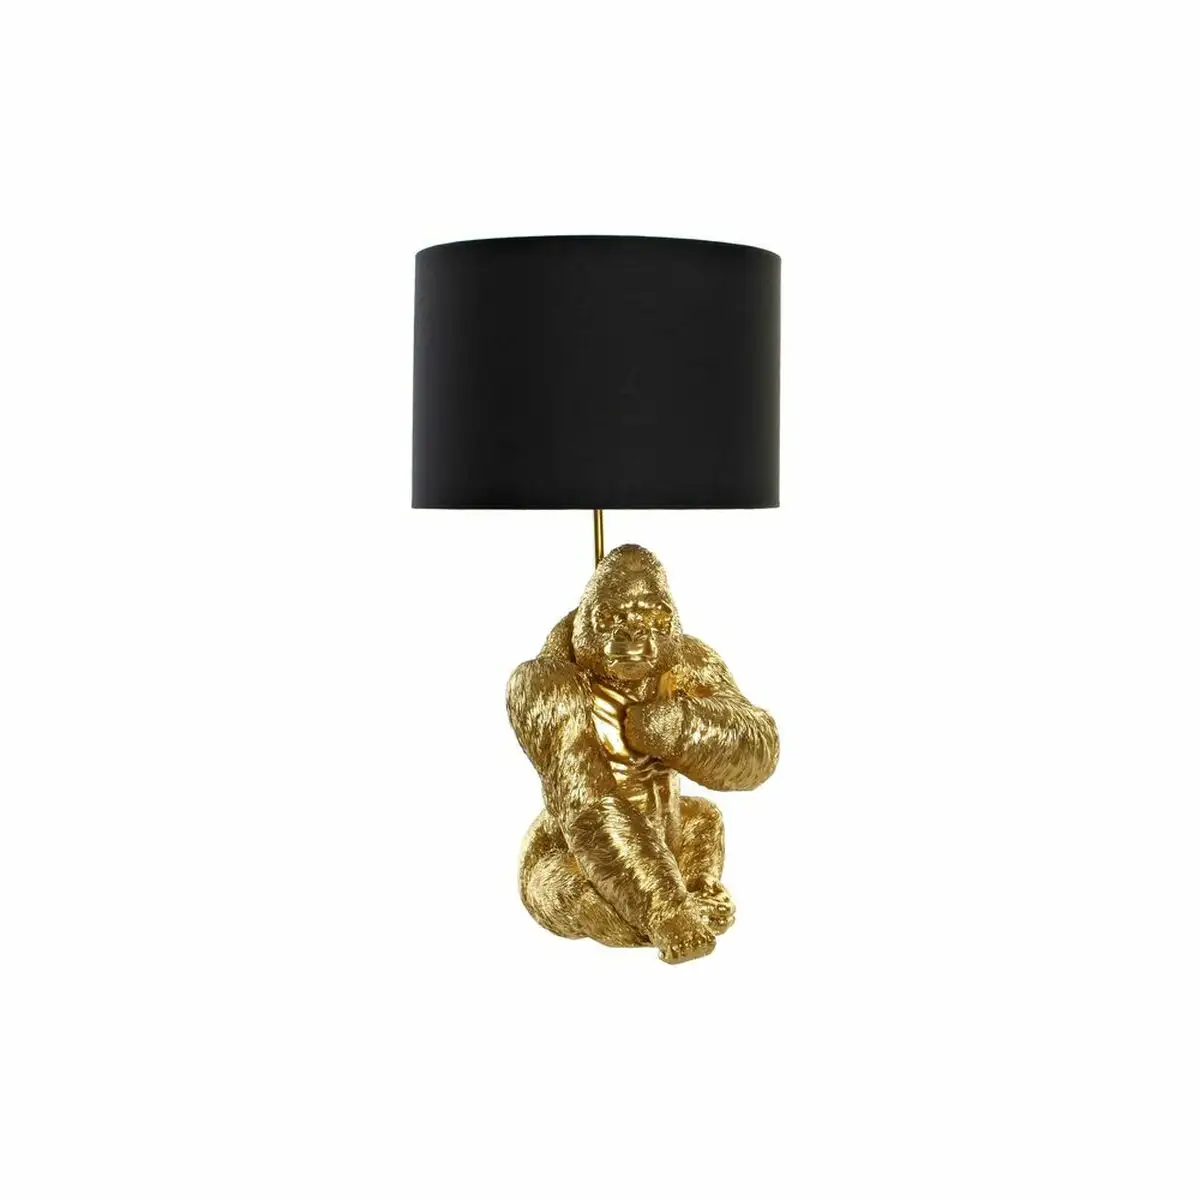 Lampe de bureau dkd home decor noir dore polyester resine gorille 20 x 20 x 42 cm _5545. Découvrez DIAYTAR SENEGAL - Où l'Élégance Rencontre la Variété. Parcourez notre collection et trouvez des trésors cachés qui ajoutent une touche de sophistication à votre vie quotidienne.